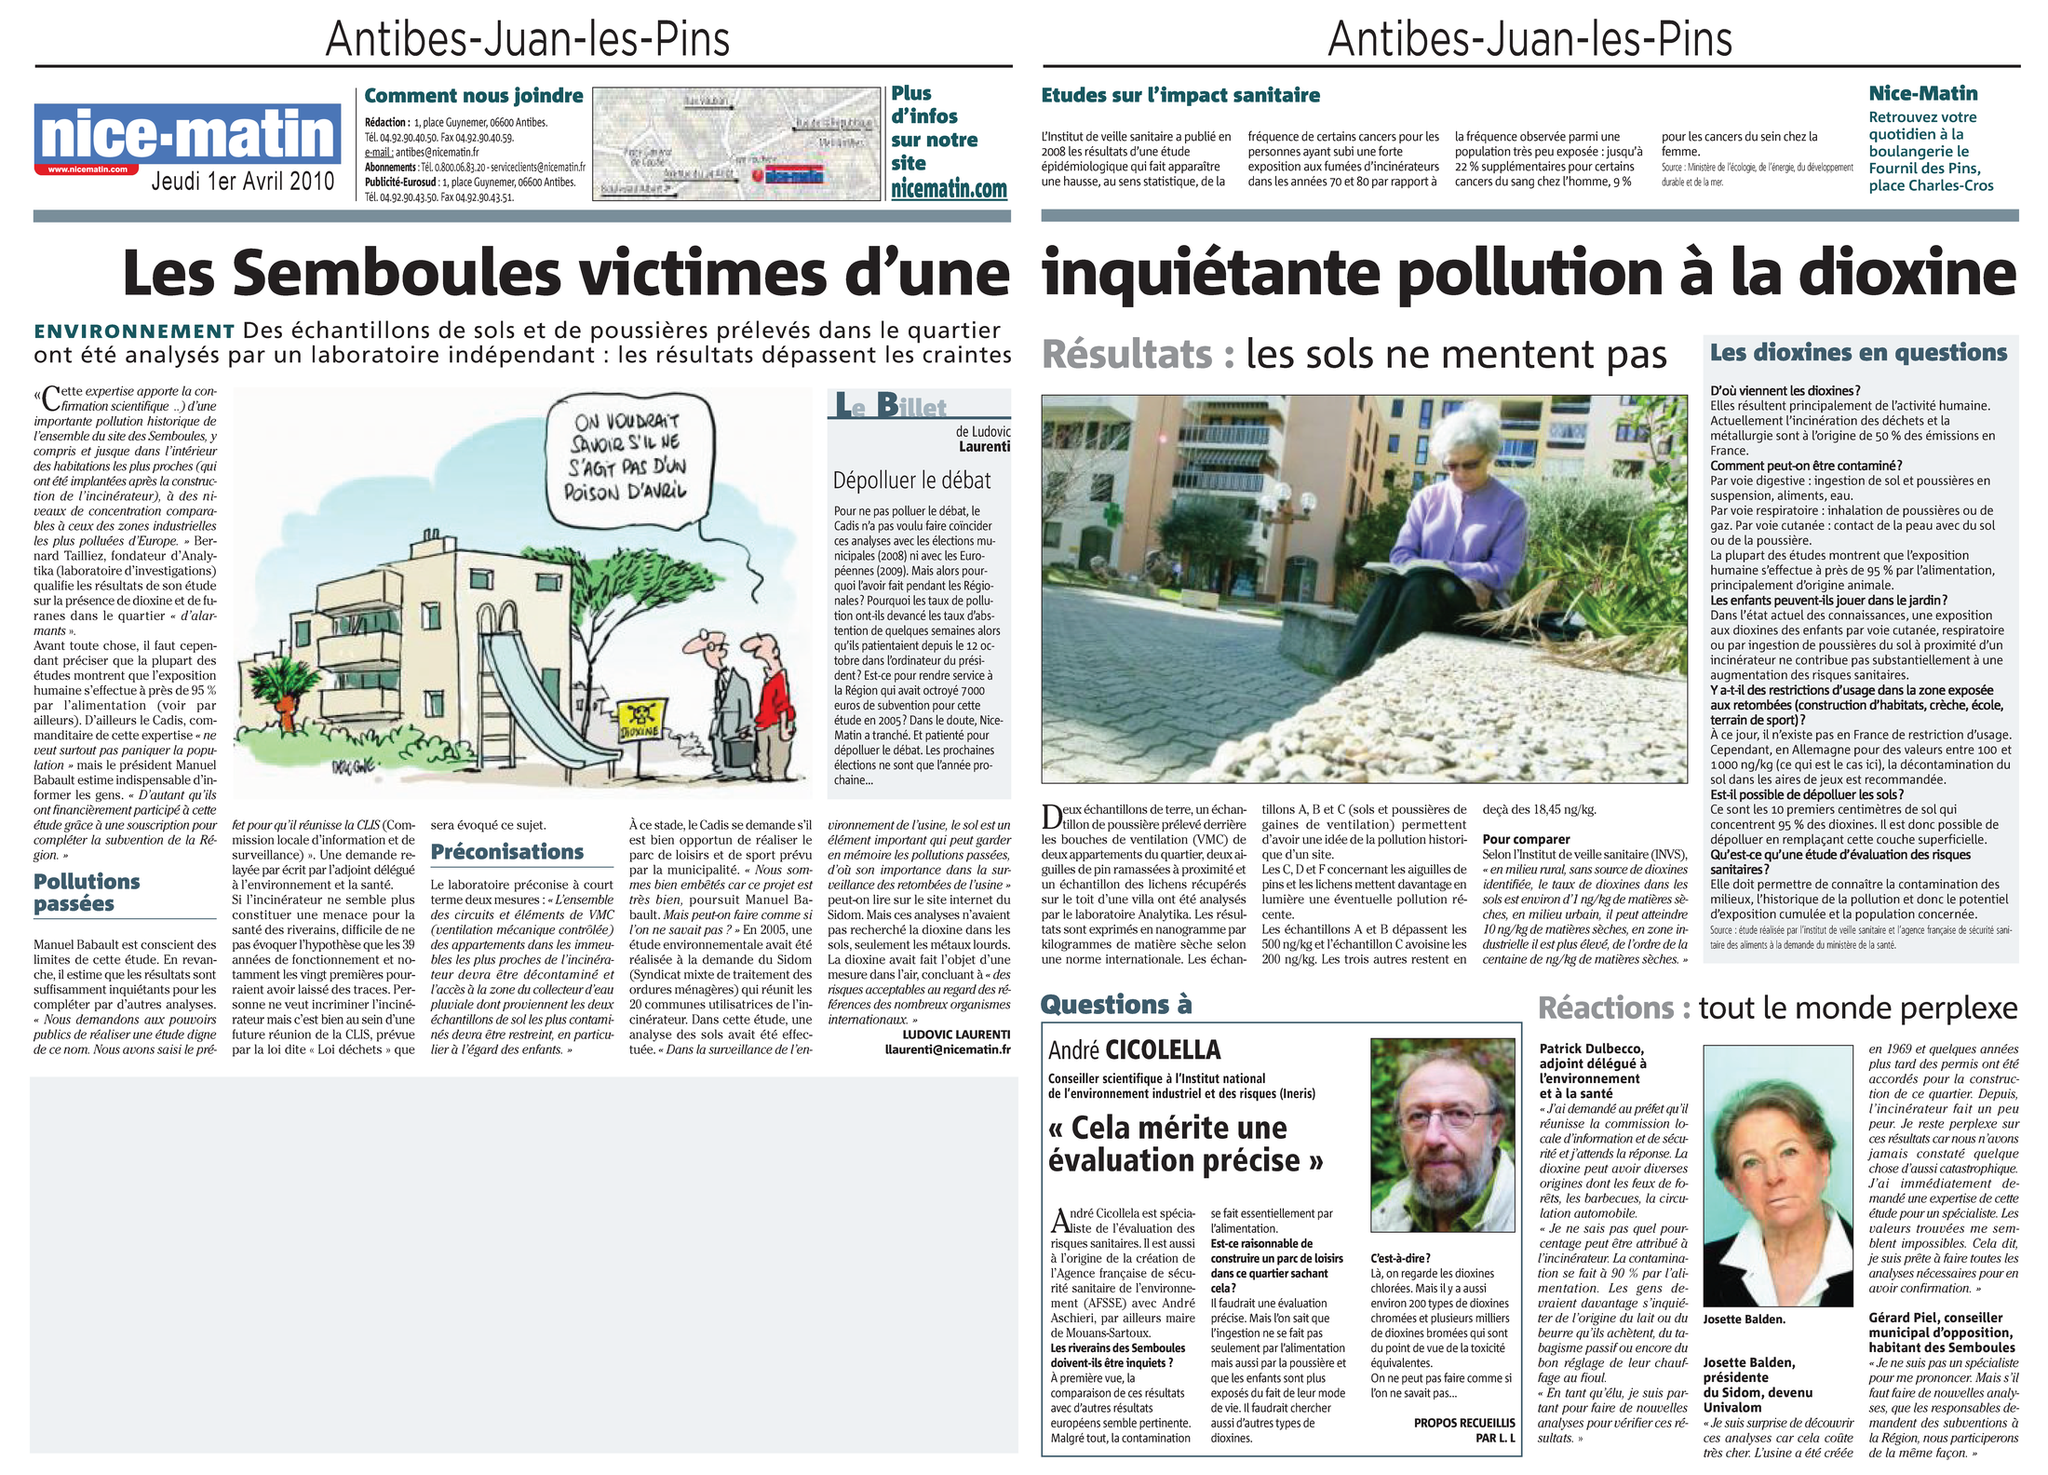 01.04.2010 > NICE MATIN : "Les Semboules victimes d'une inquiétante pollution à la dioxine"